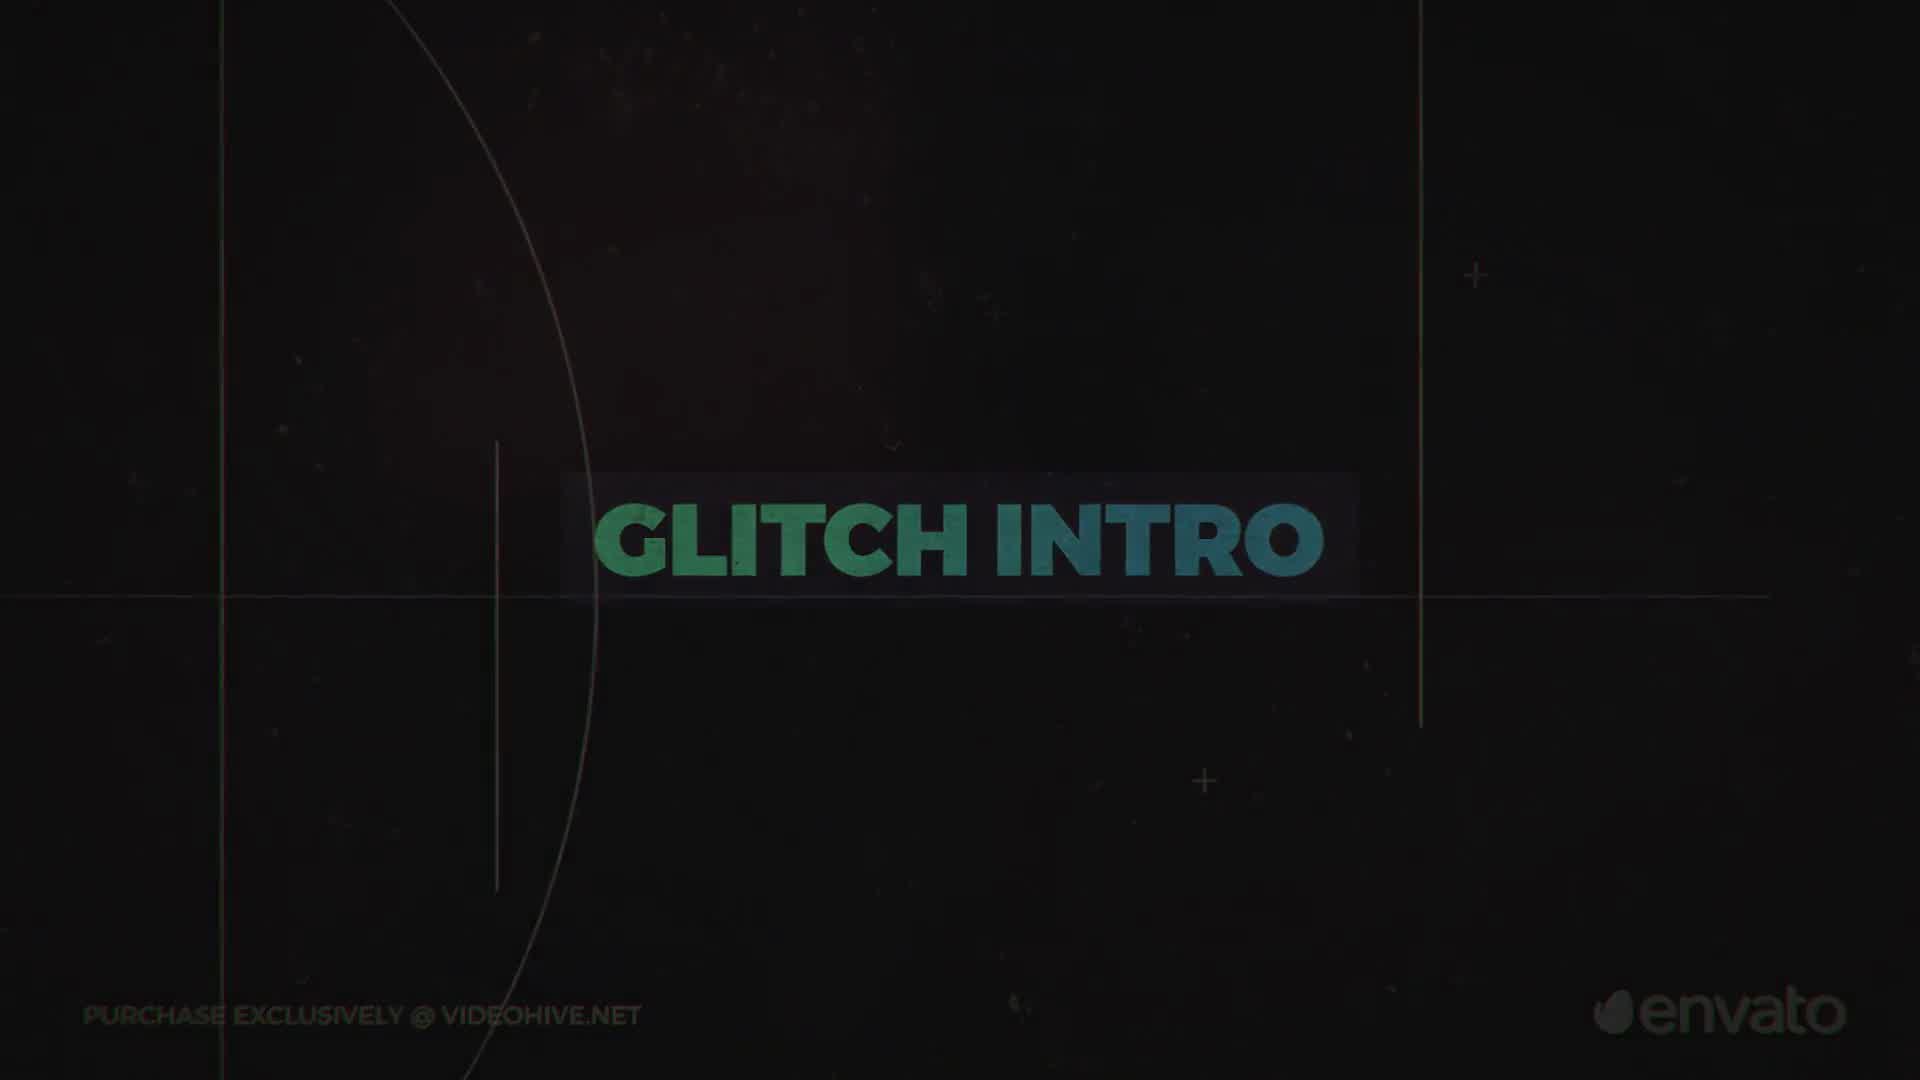 Glitch Intro - Download Videohive 22695191